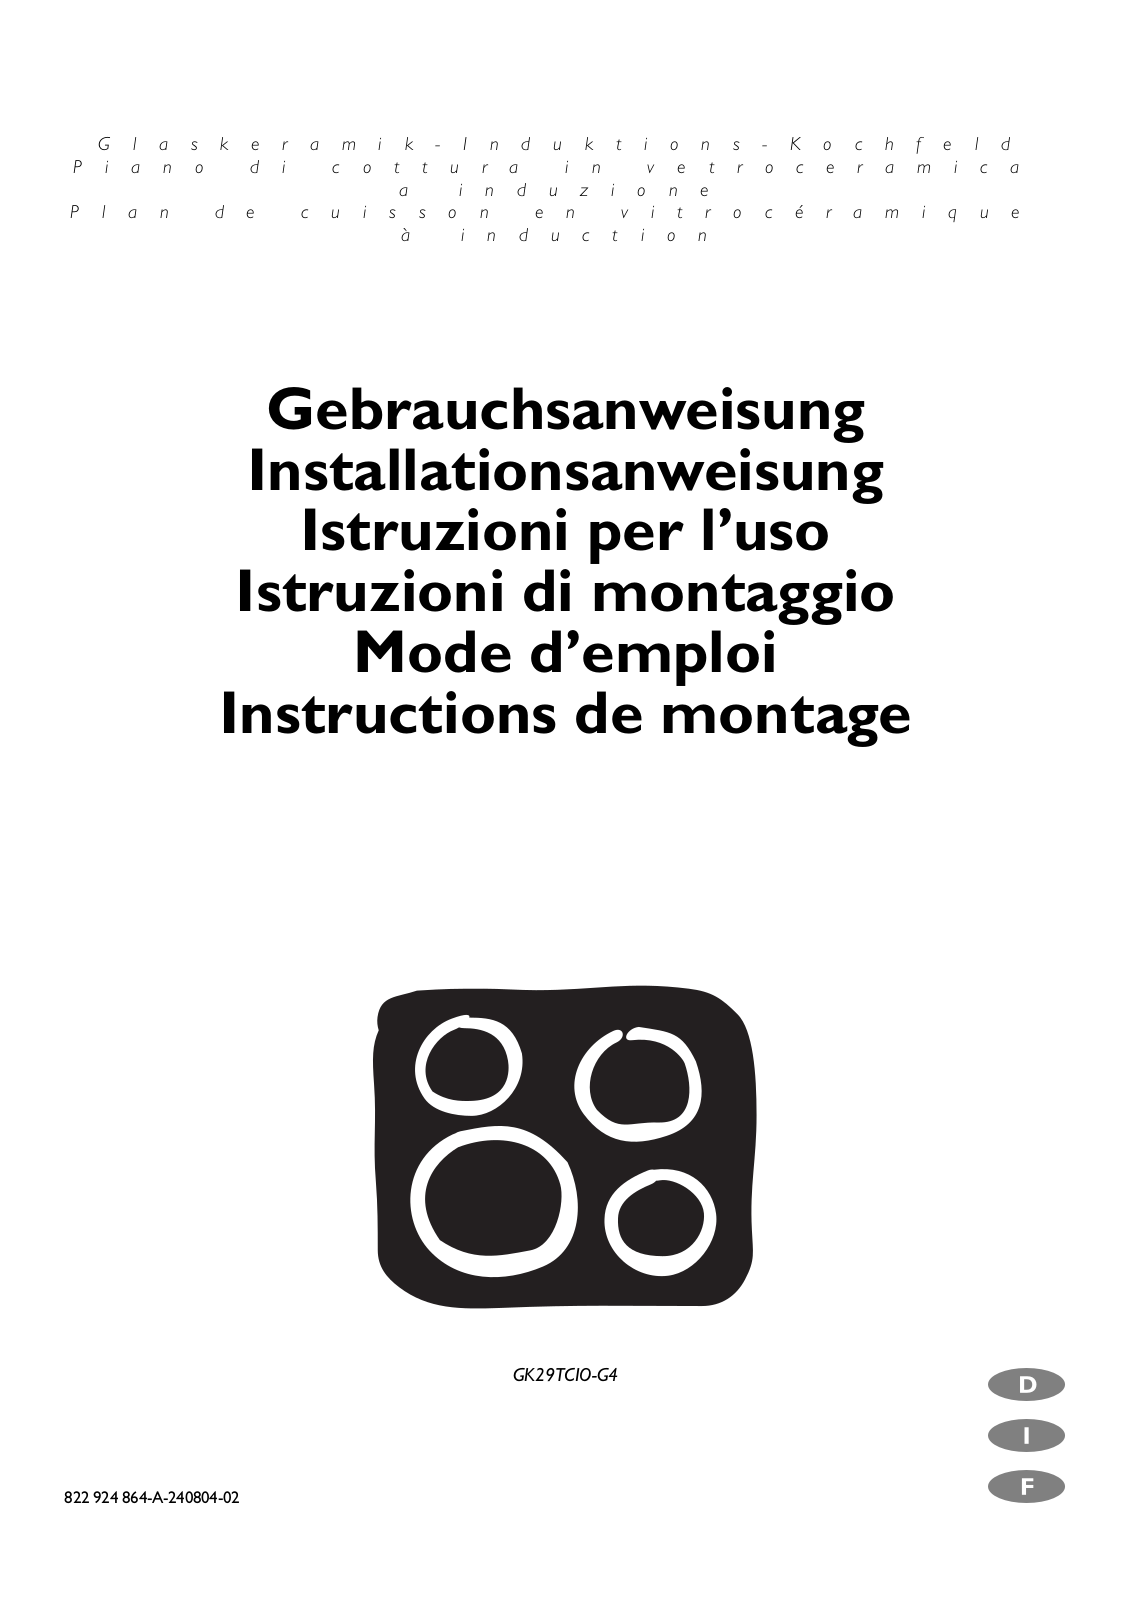 electrolux GK29TCIO-G4 User Manual